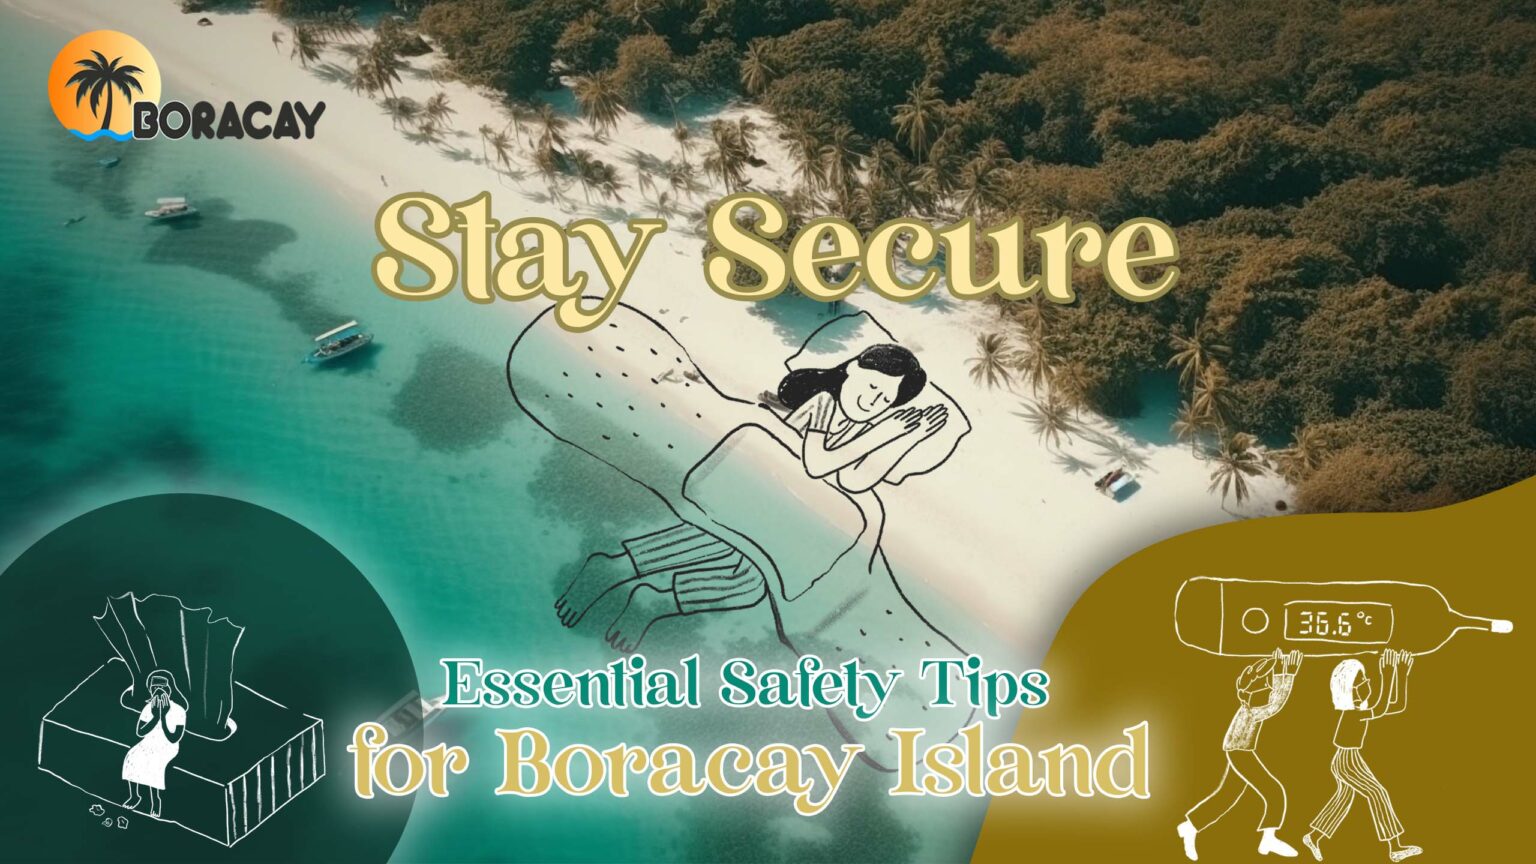 Safety tips for Boracay Island